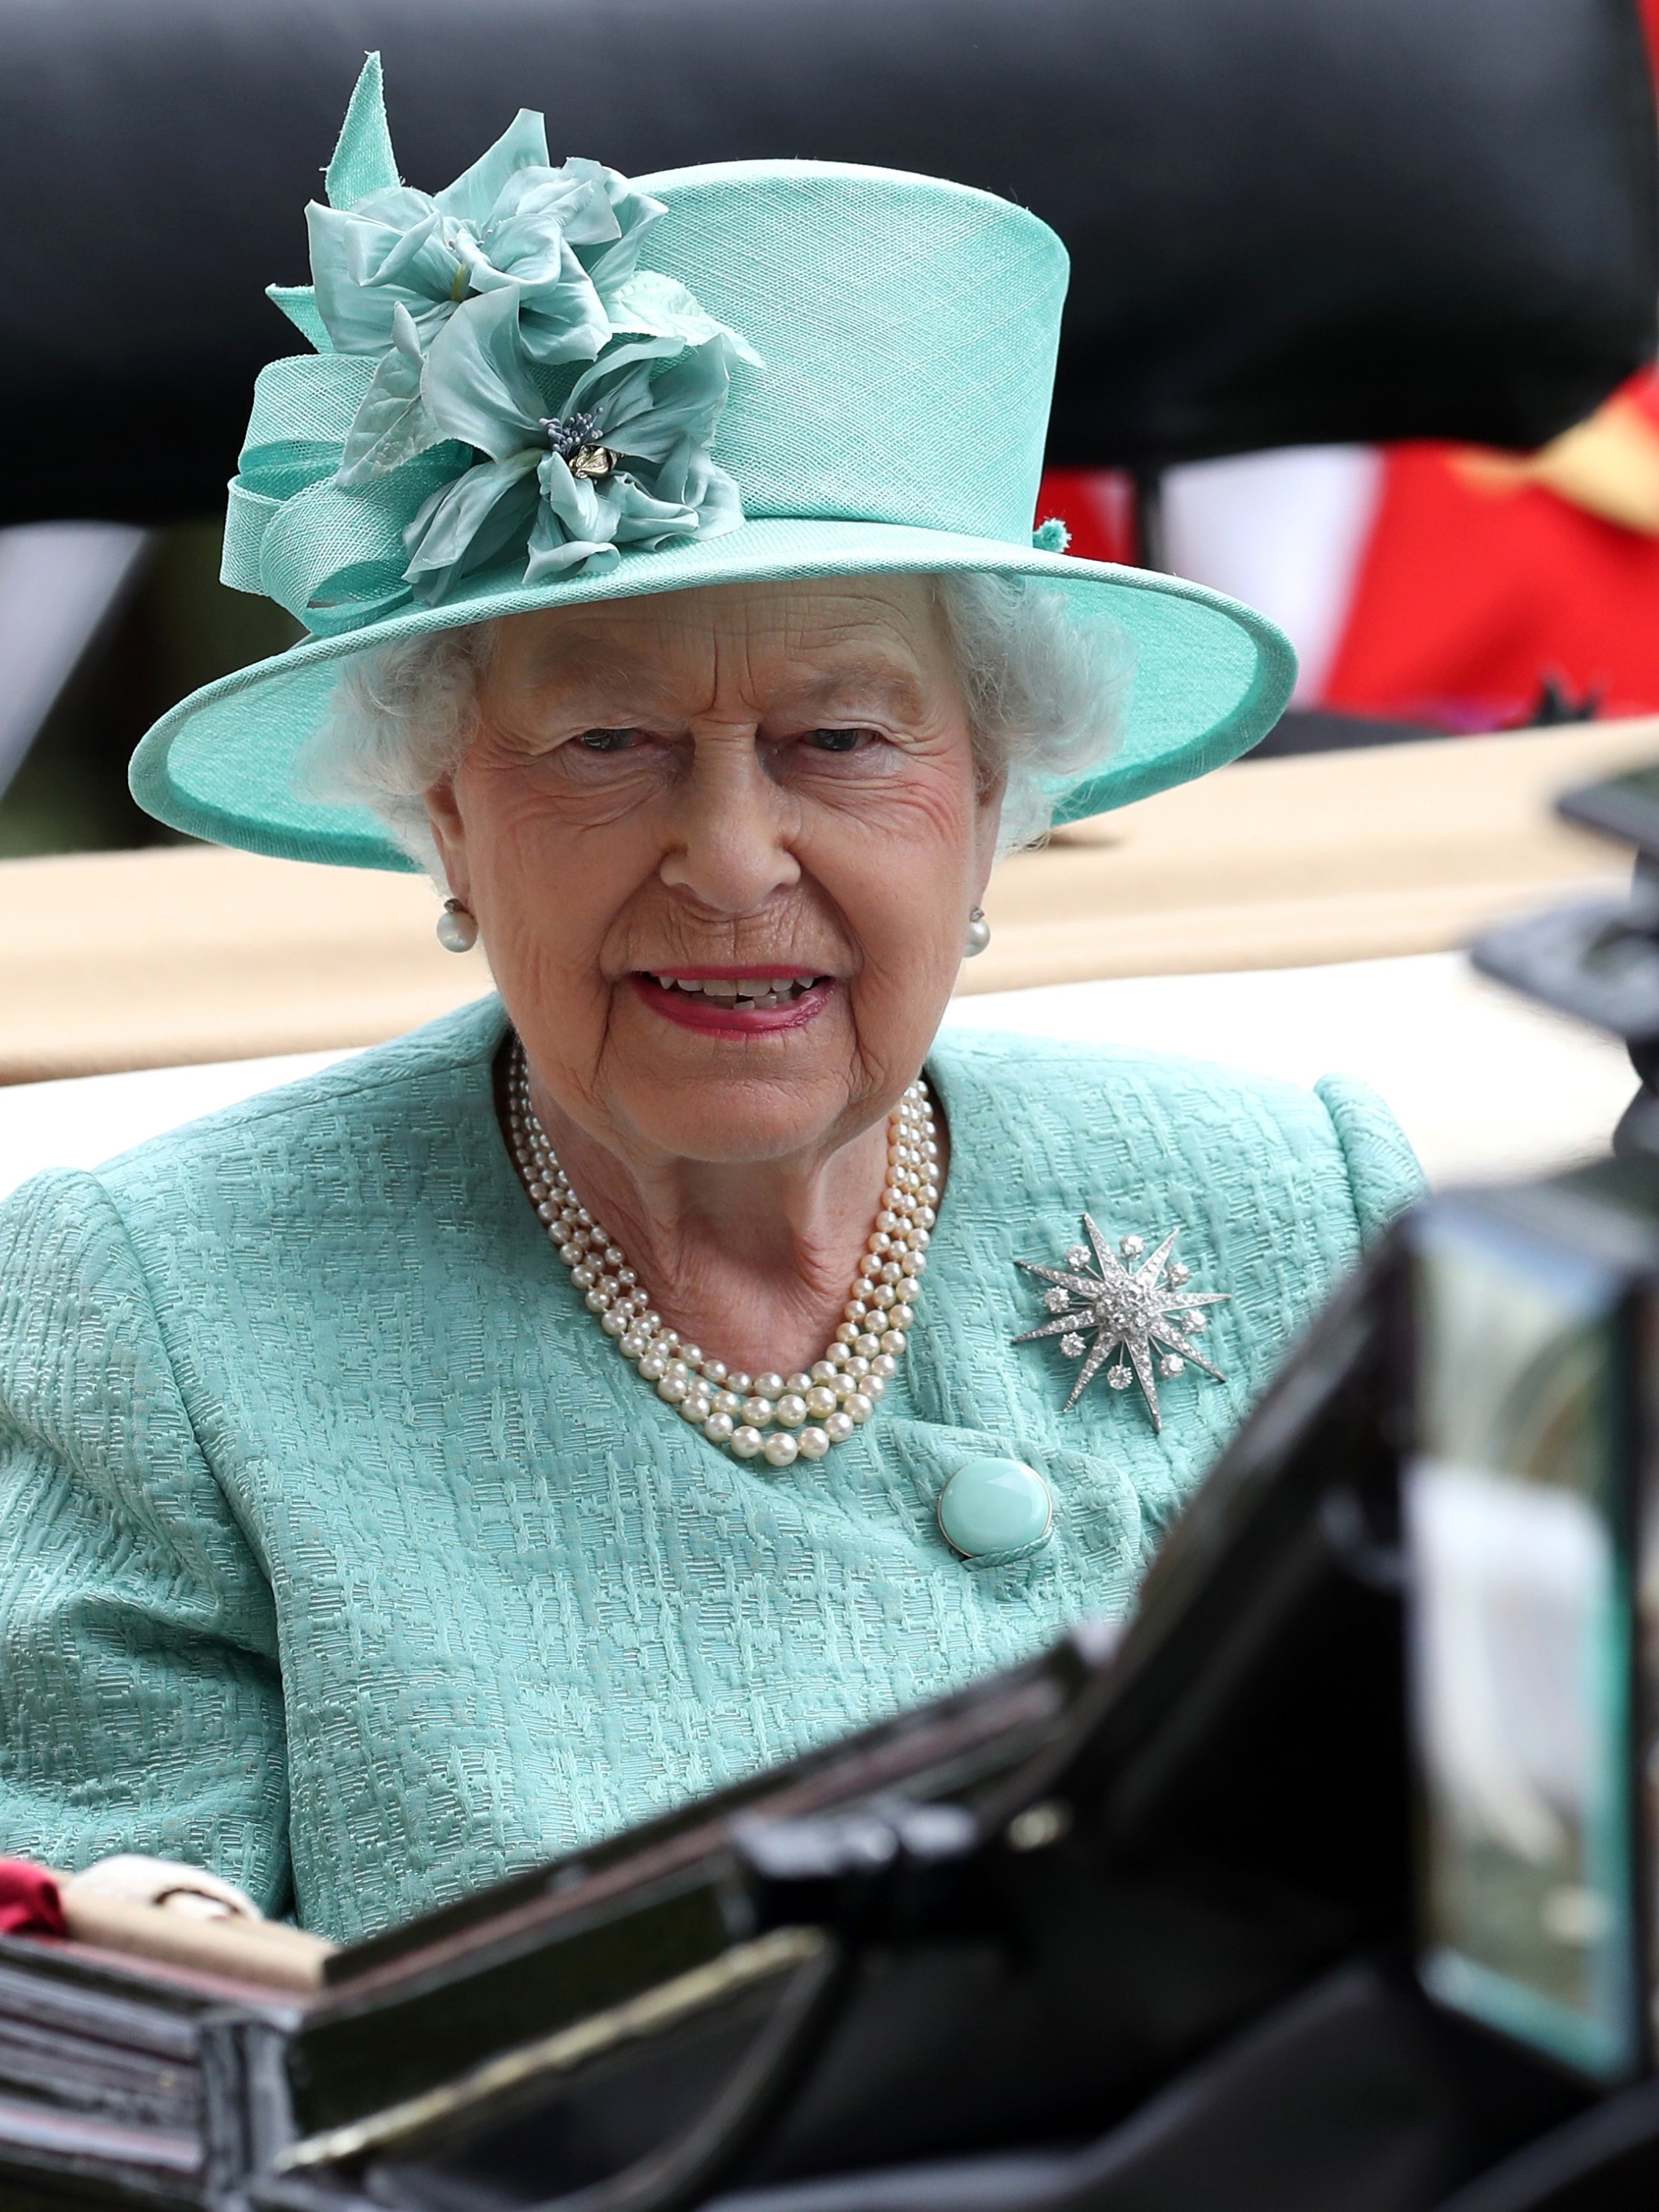 Políticos brasileiros lamentam morte de rainha Elizabeth 2ª